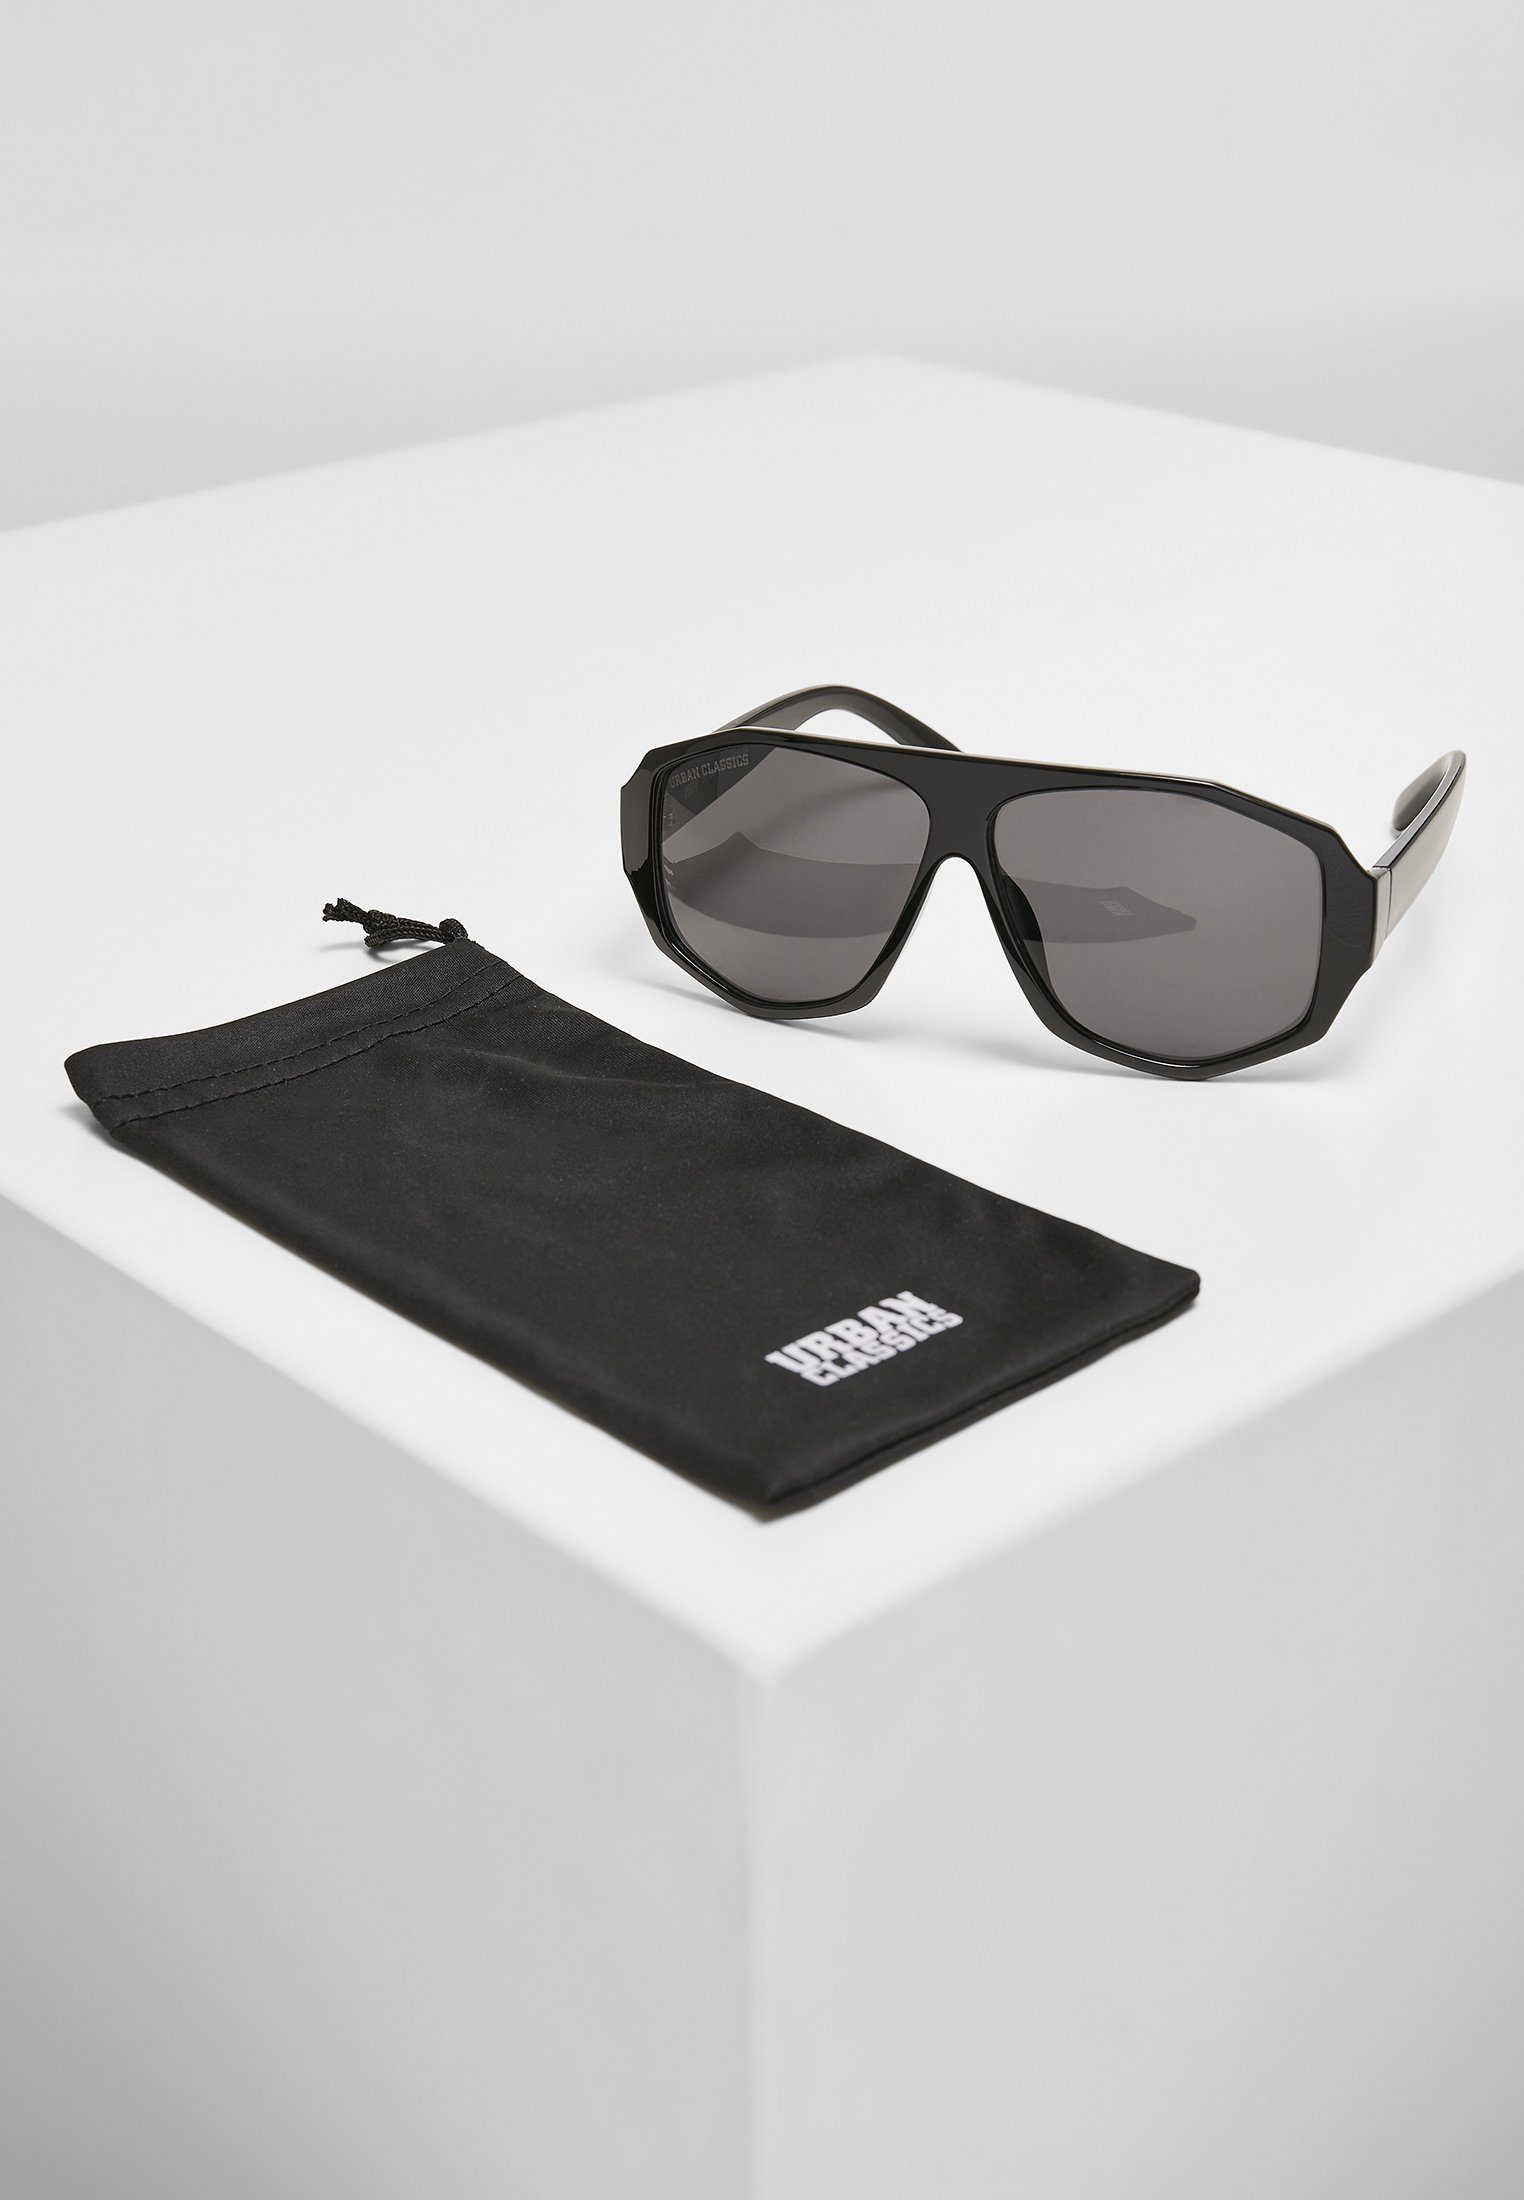 Accessoires URBAN black/black UC CLASSICS 101 Sonnenbrille Sunglasses